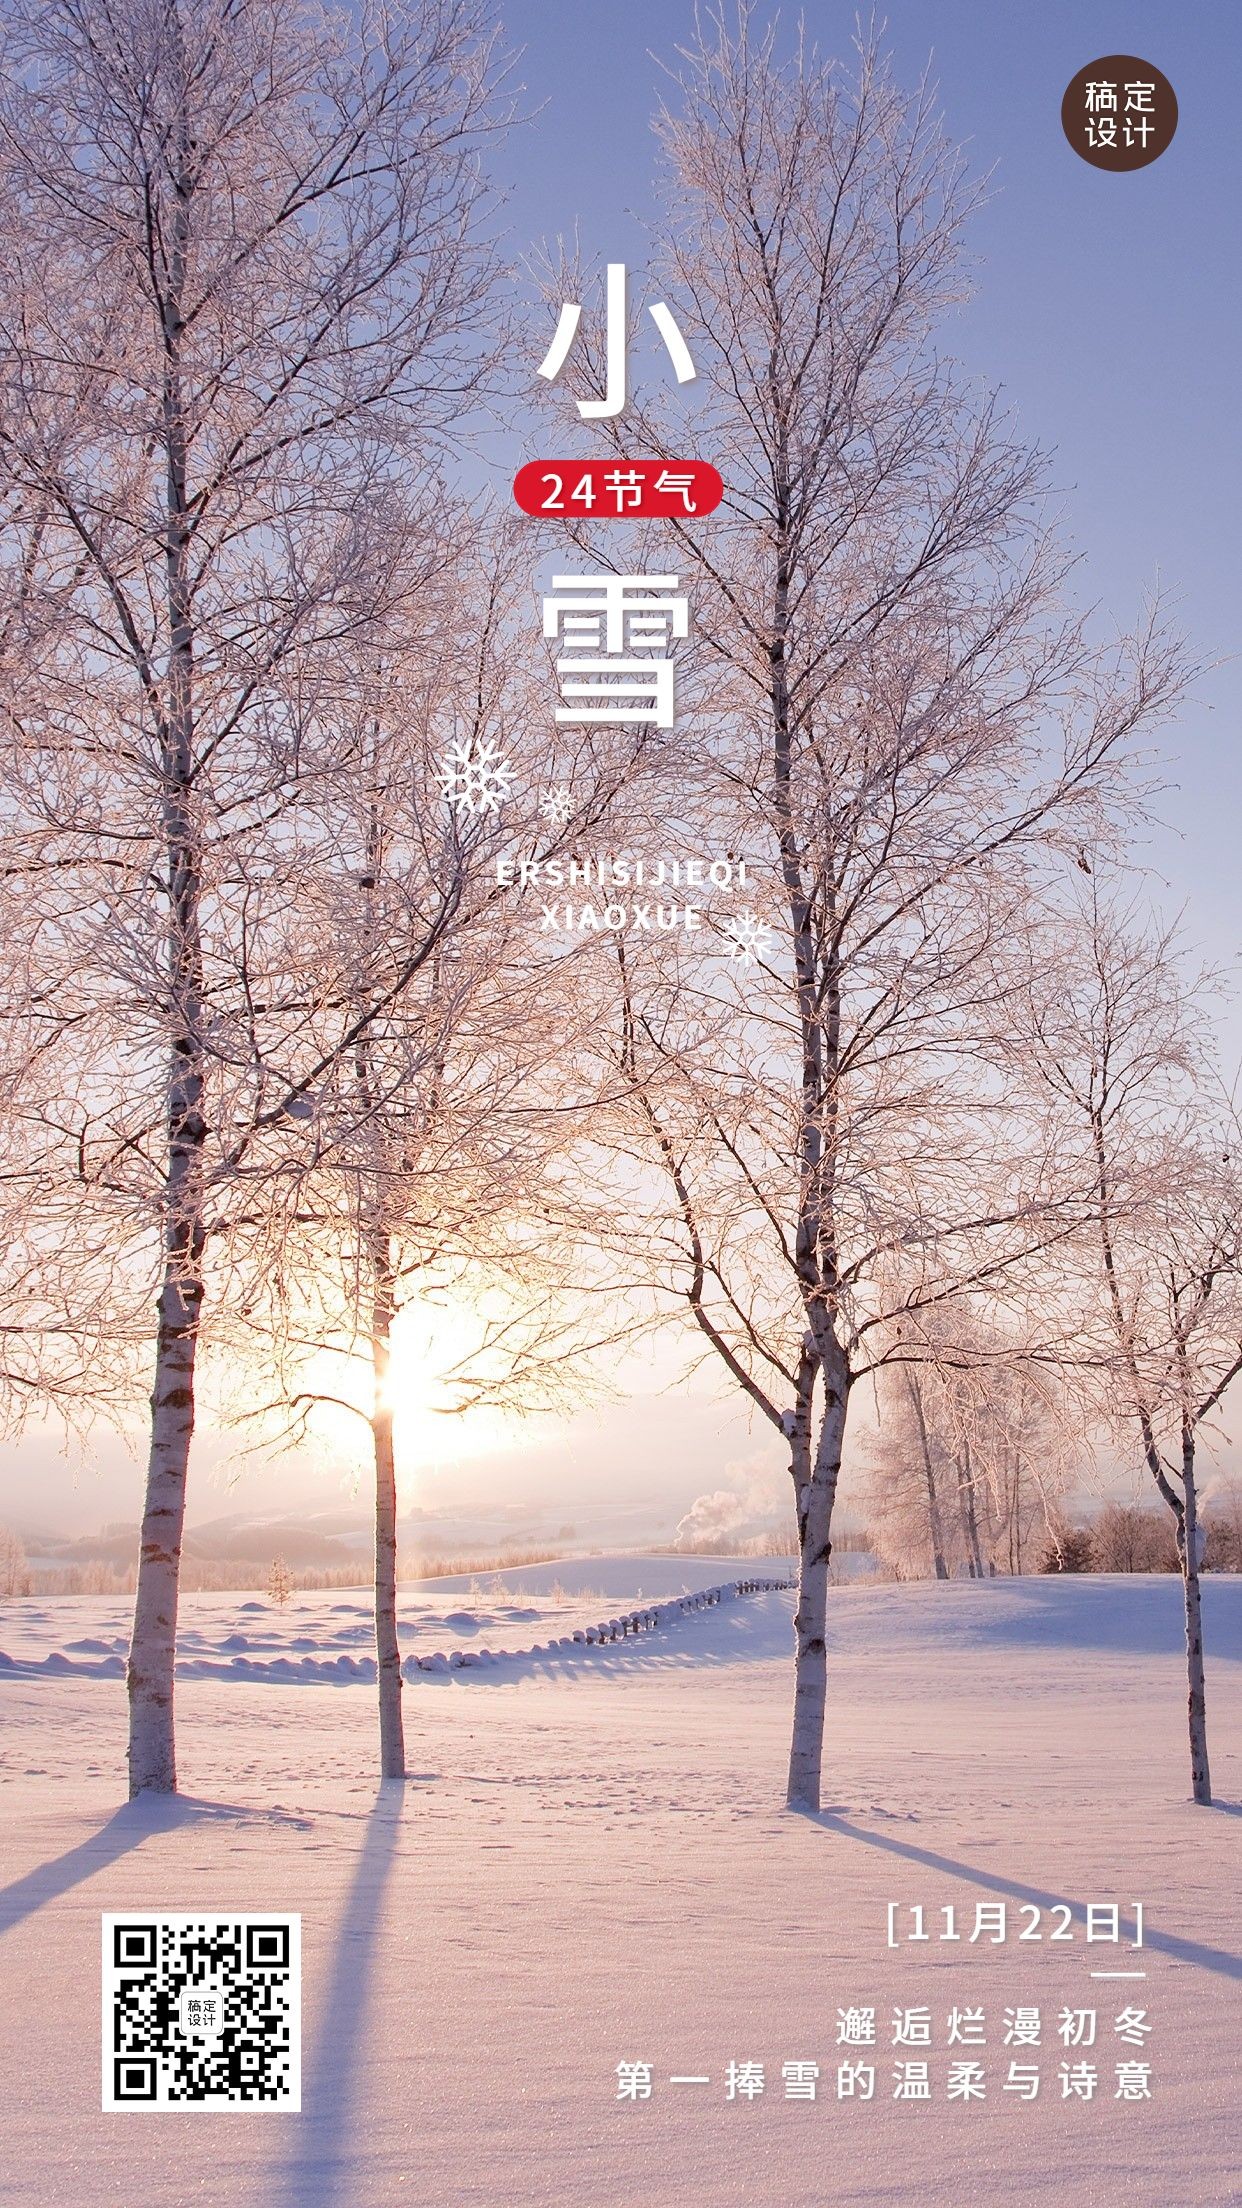 新媒体小雪节气祝福手机海报预览效果